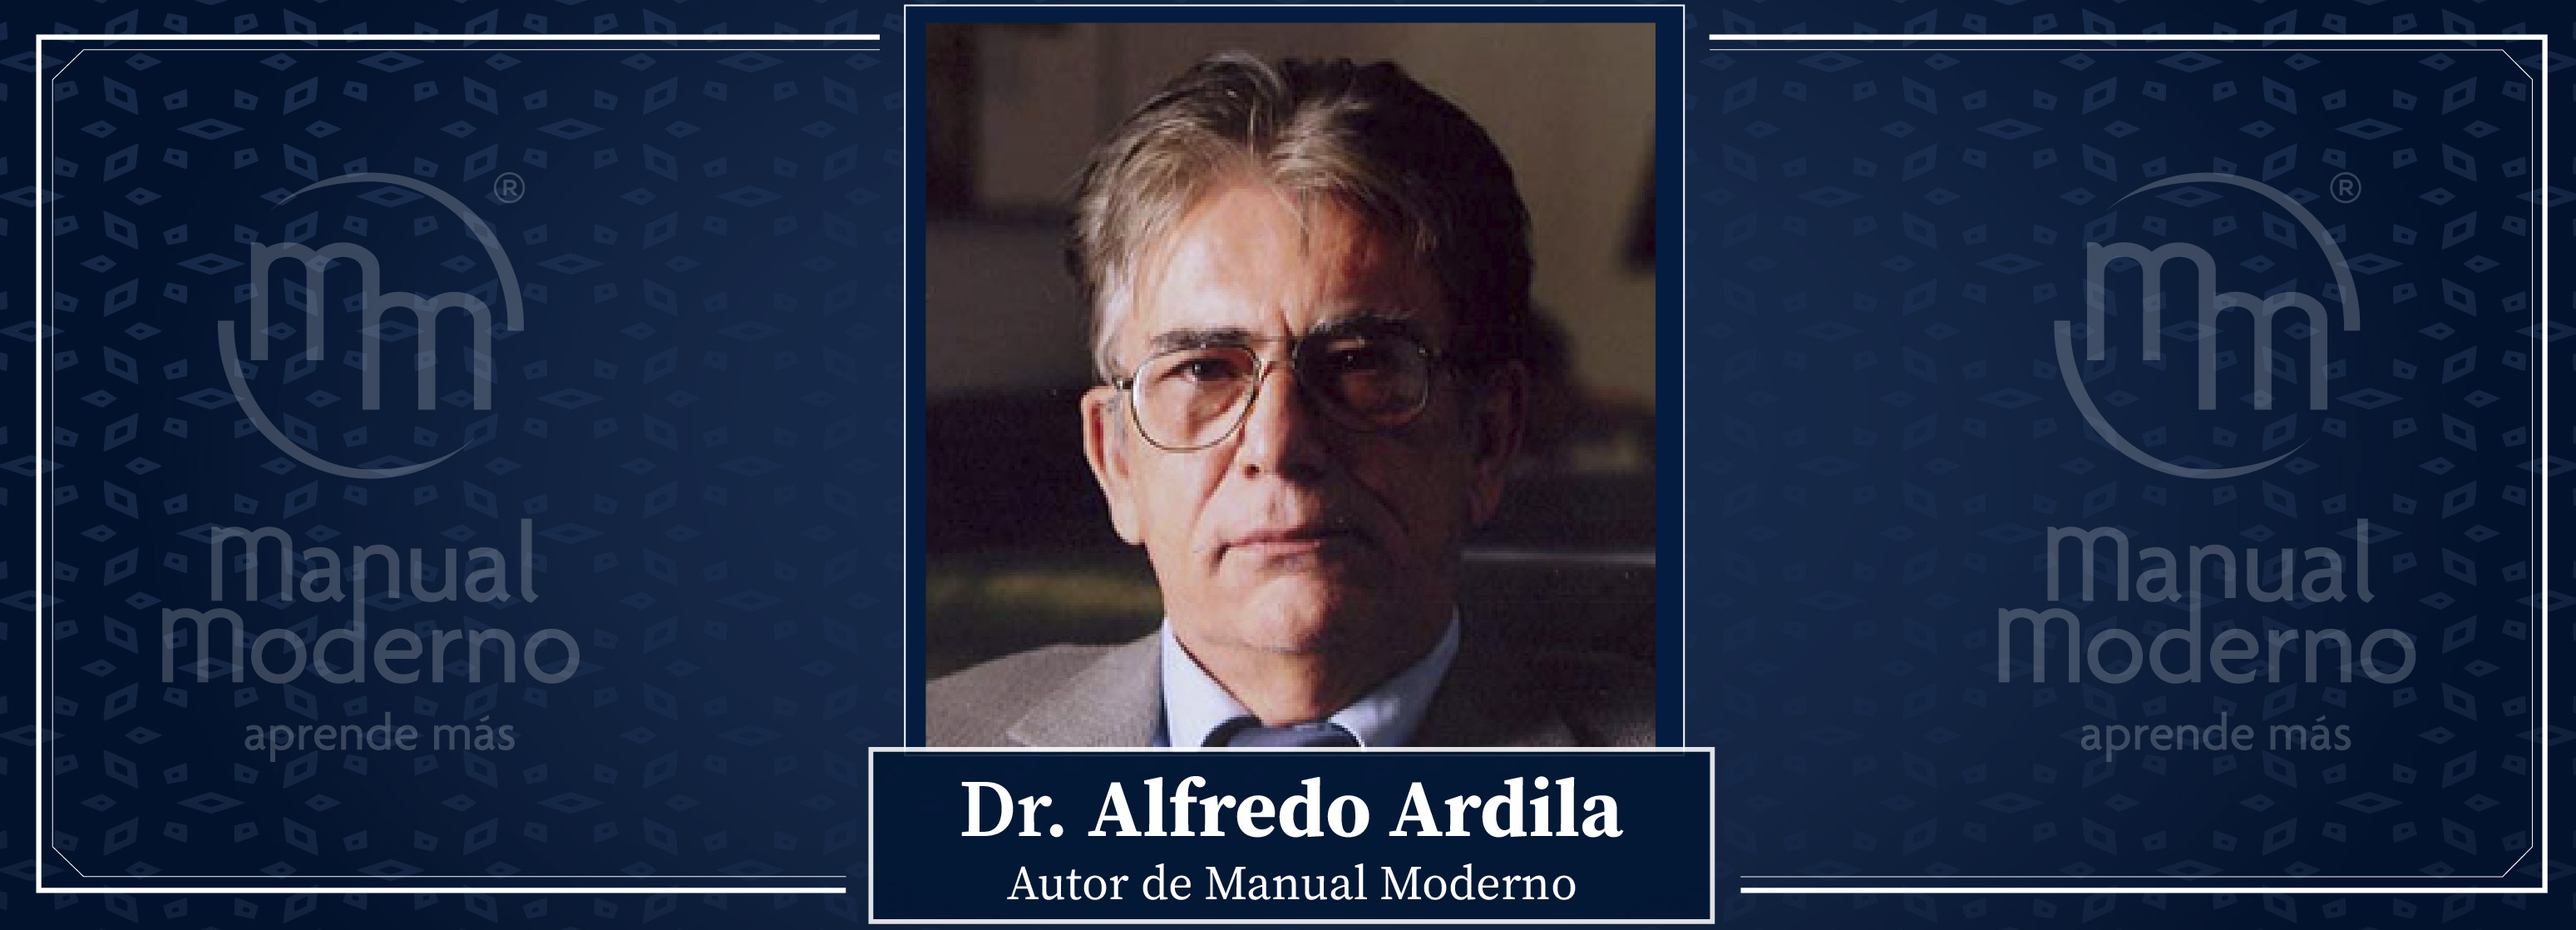 Nuestros Autores. Dr. Alfredo Ardila